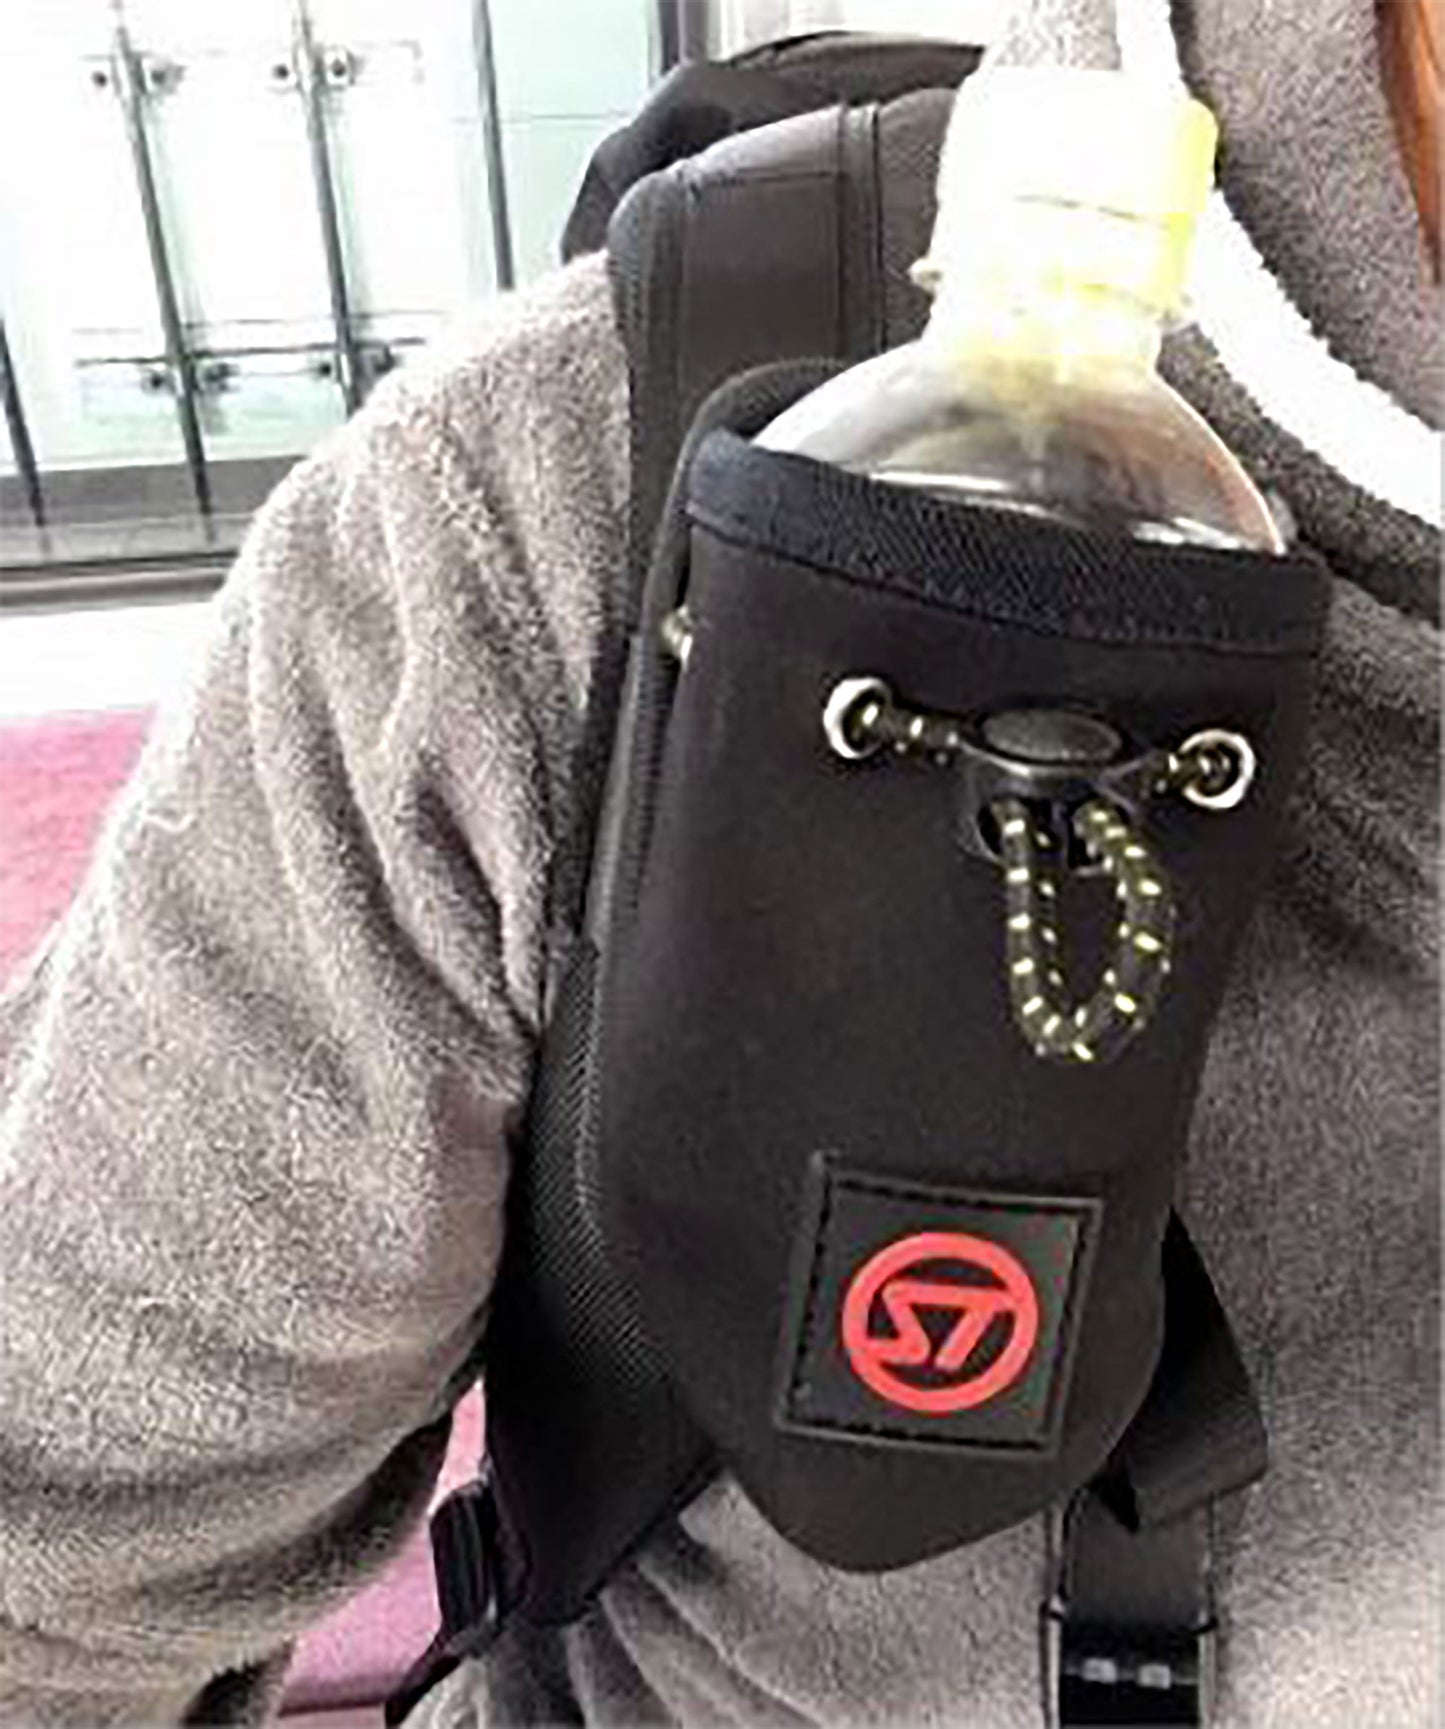 SD Bottle Holder II